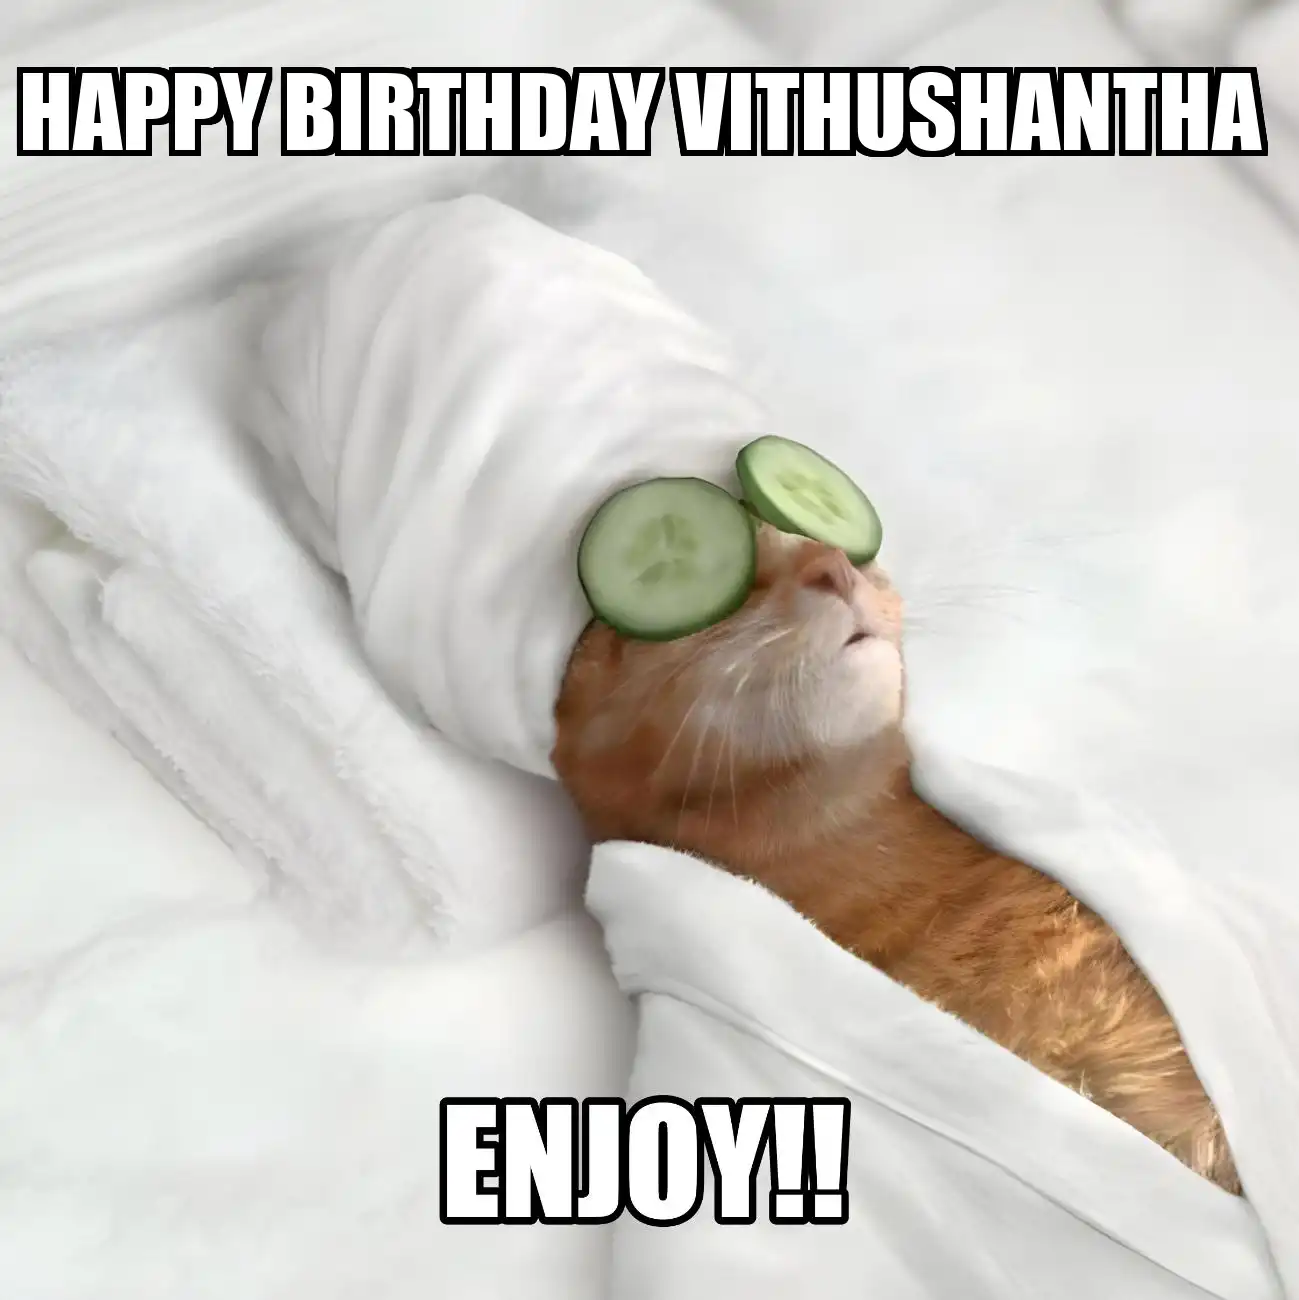 Happy Birthday Vithushantha Enjoy Cat Meme